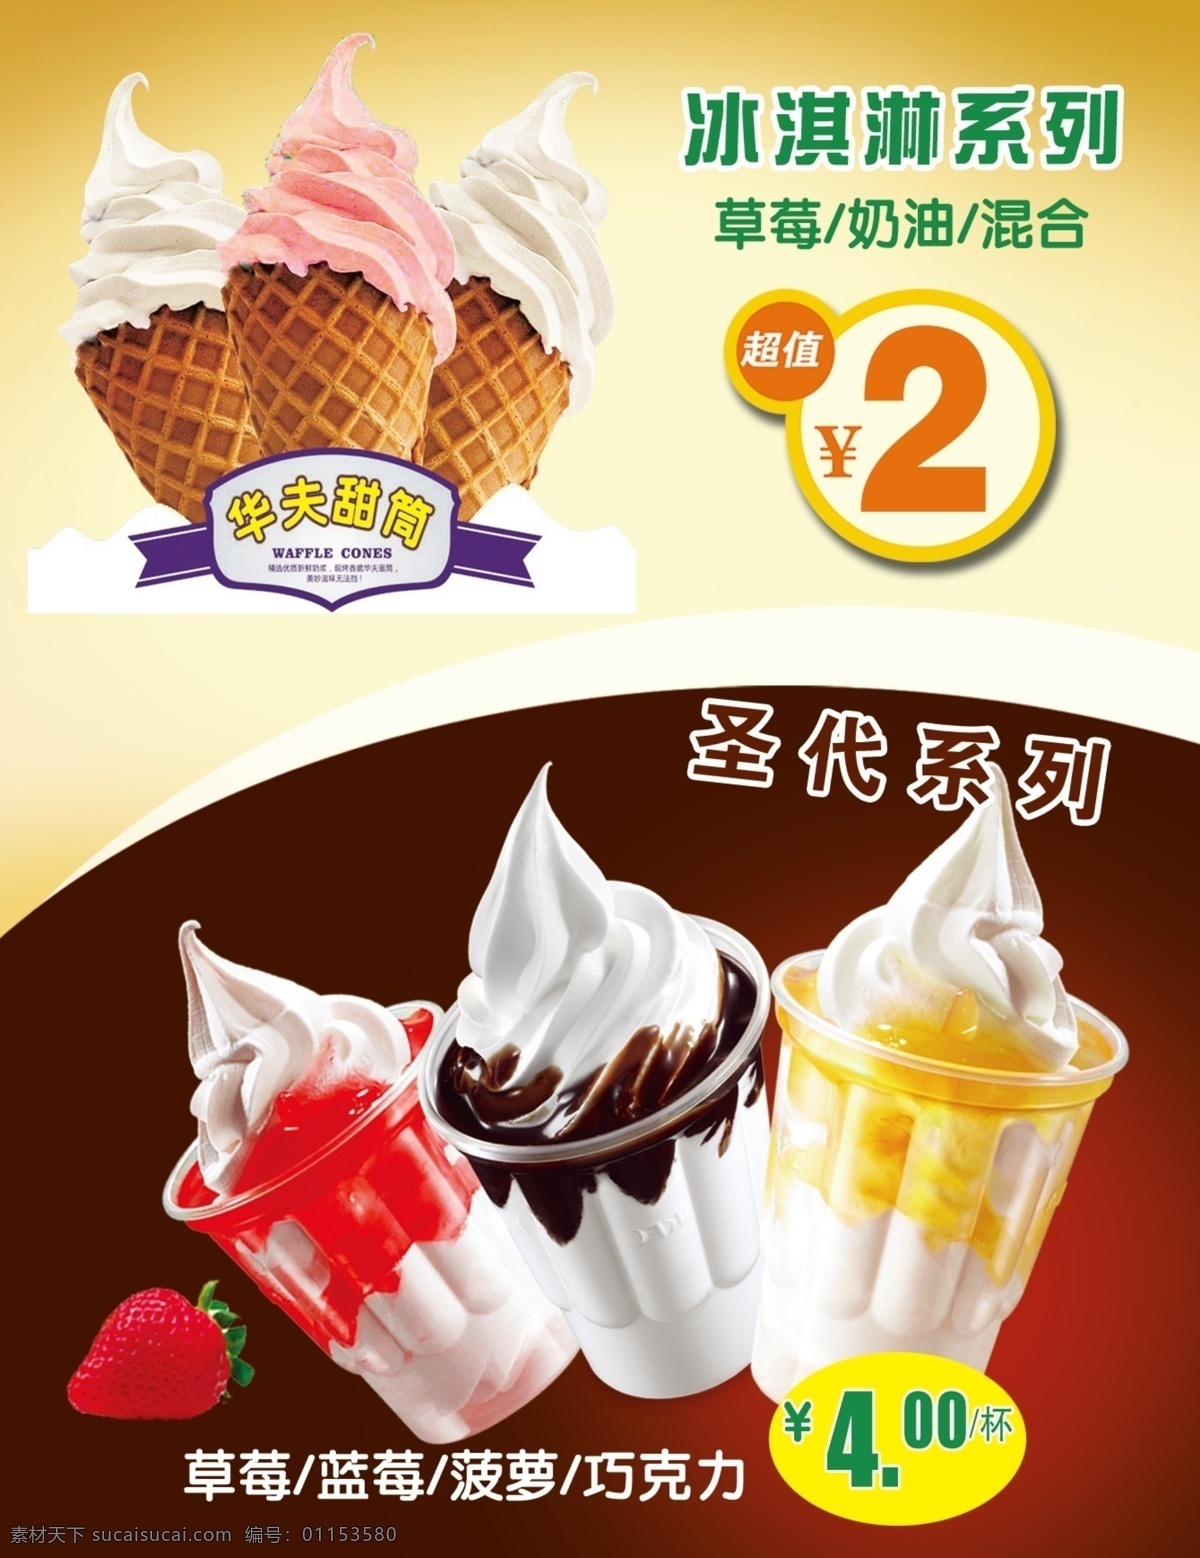 冰淇淋 系列 圣代 海报 冰淇淋系列 圣代系列 分层 华夫甜筒 草莓味圣代 设计素材 黑色